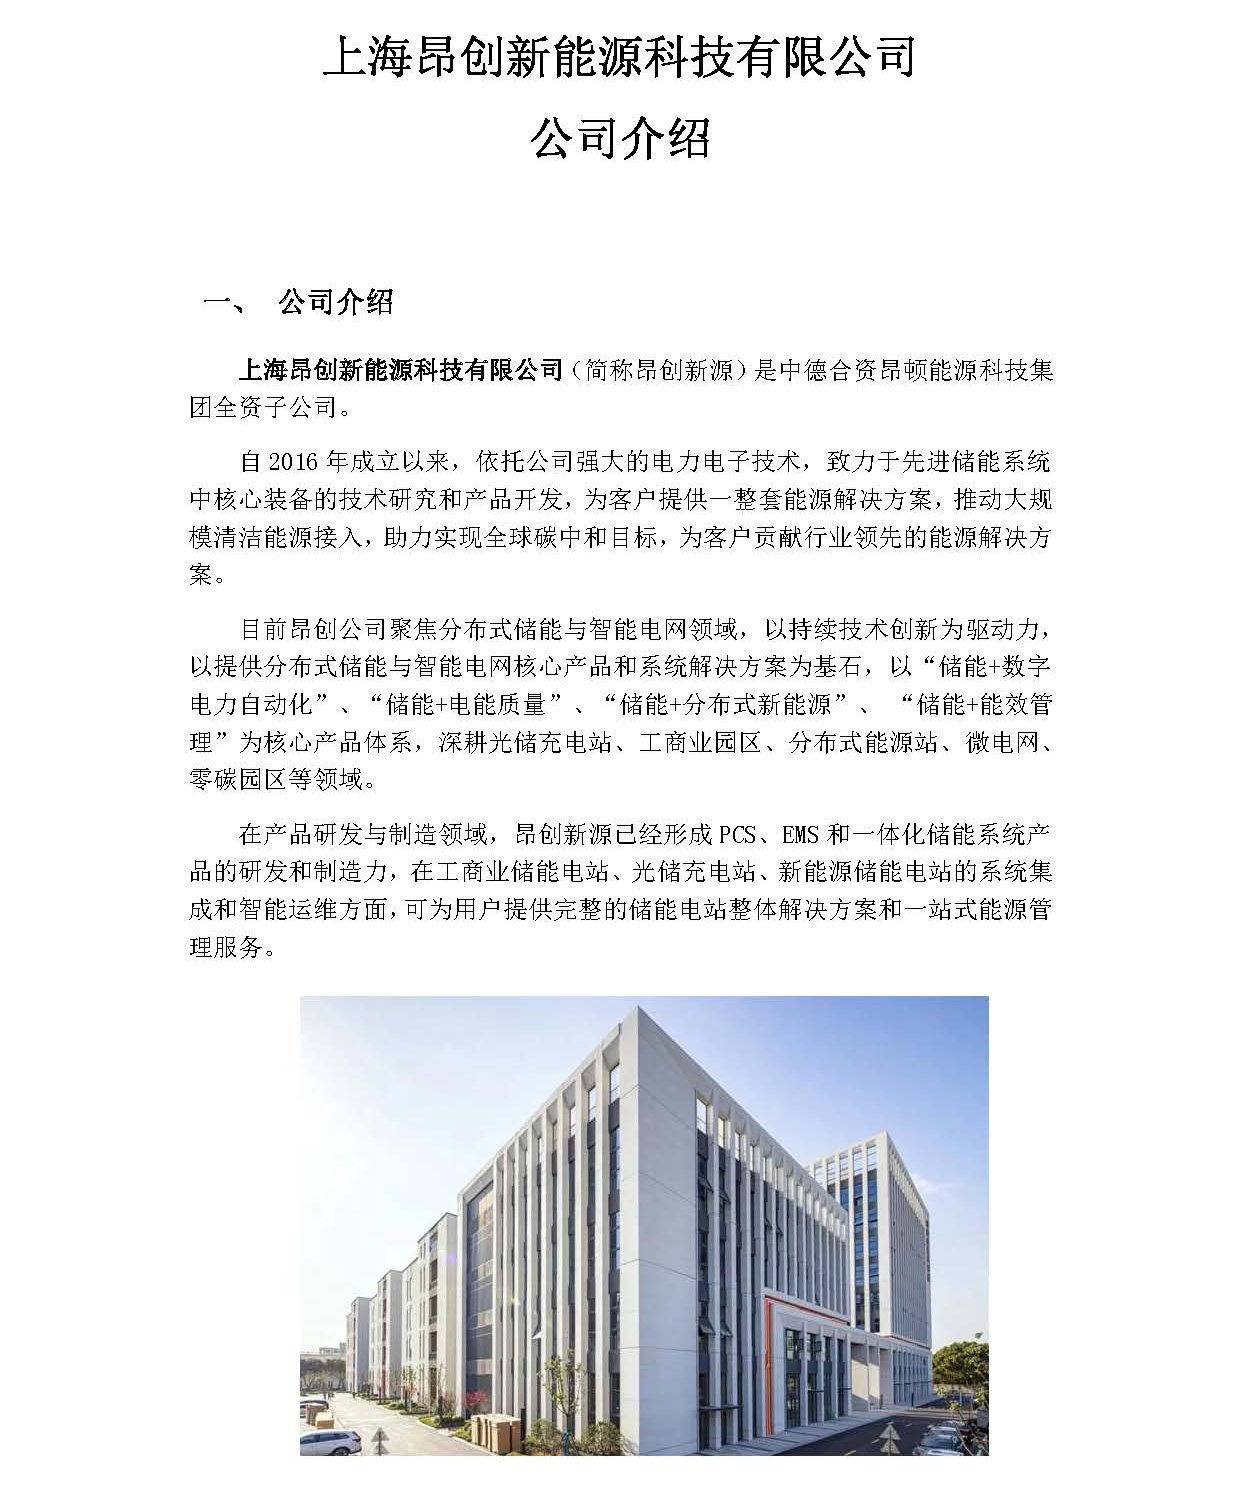 上海昂创新能源科技有限公司介绍1.jpg